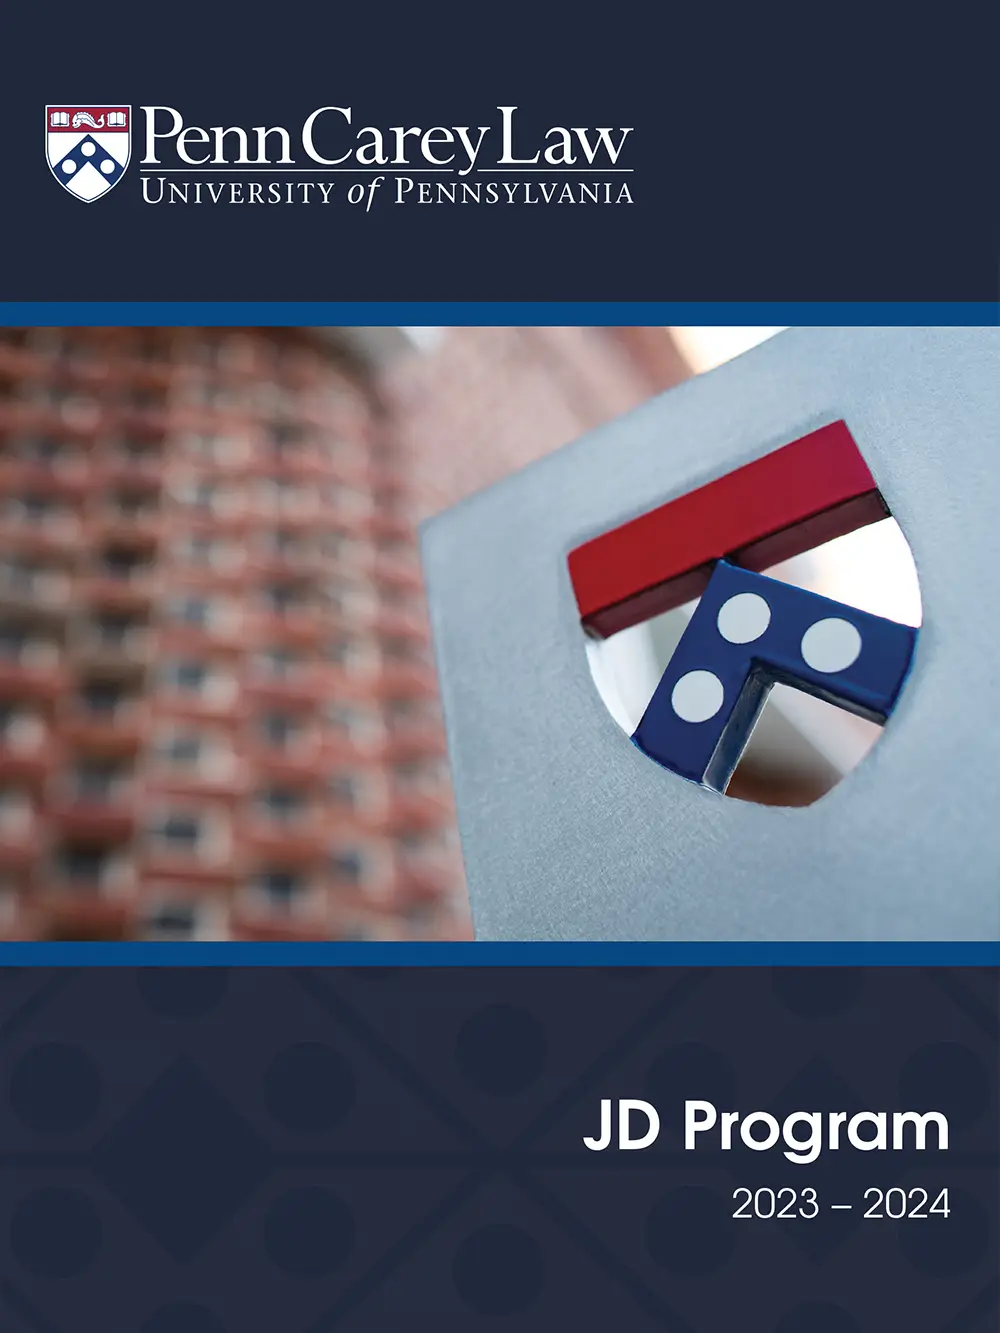 Penn Law JD Program 2023-2024 cover